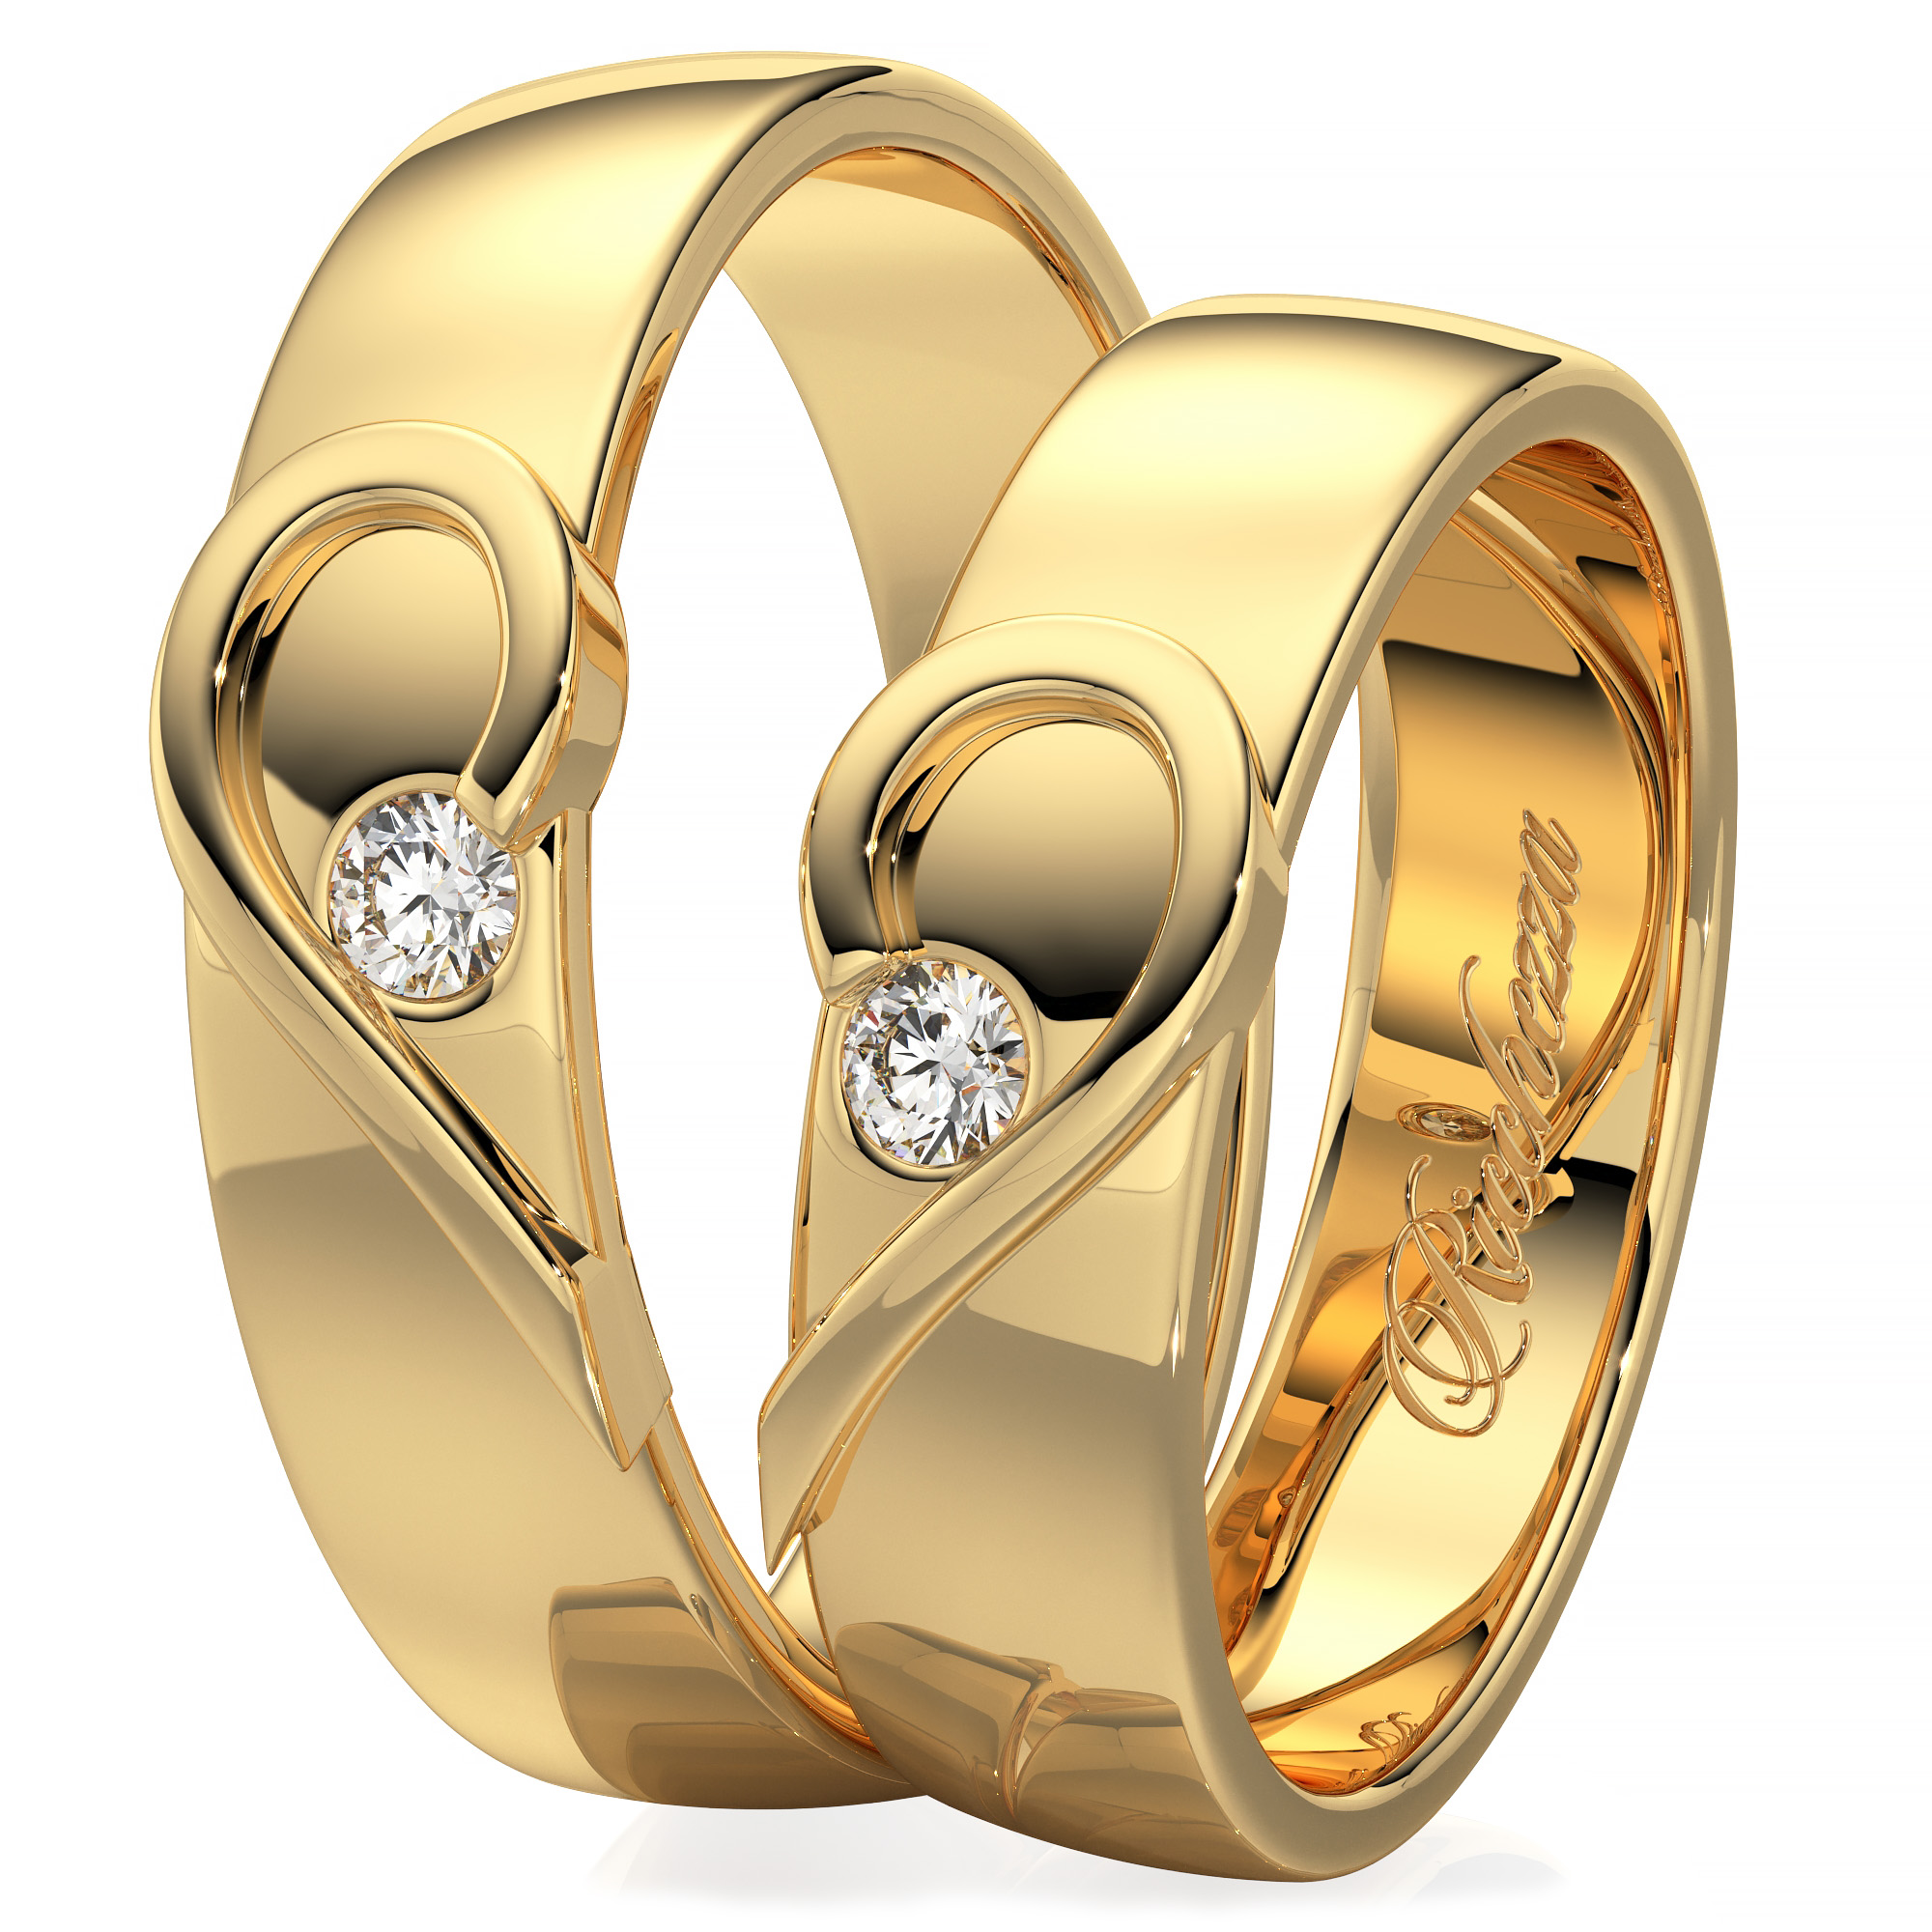 585 золотой кольца обручальные женские. Обручальные кольца парные золотые 585. Обручальные кольца парные 585 Соколов. Парные обручальные кольца из золота 585. Кольца обручальные парные золотые Адамас.